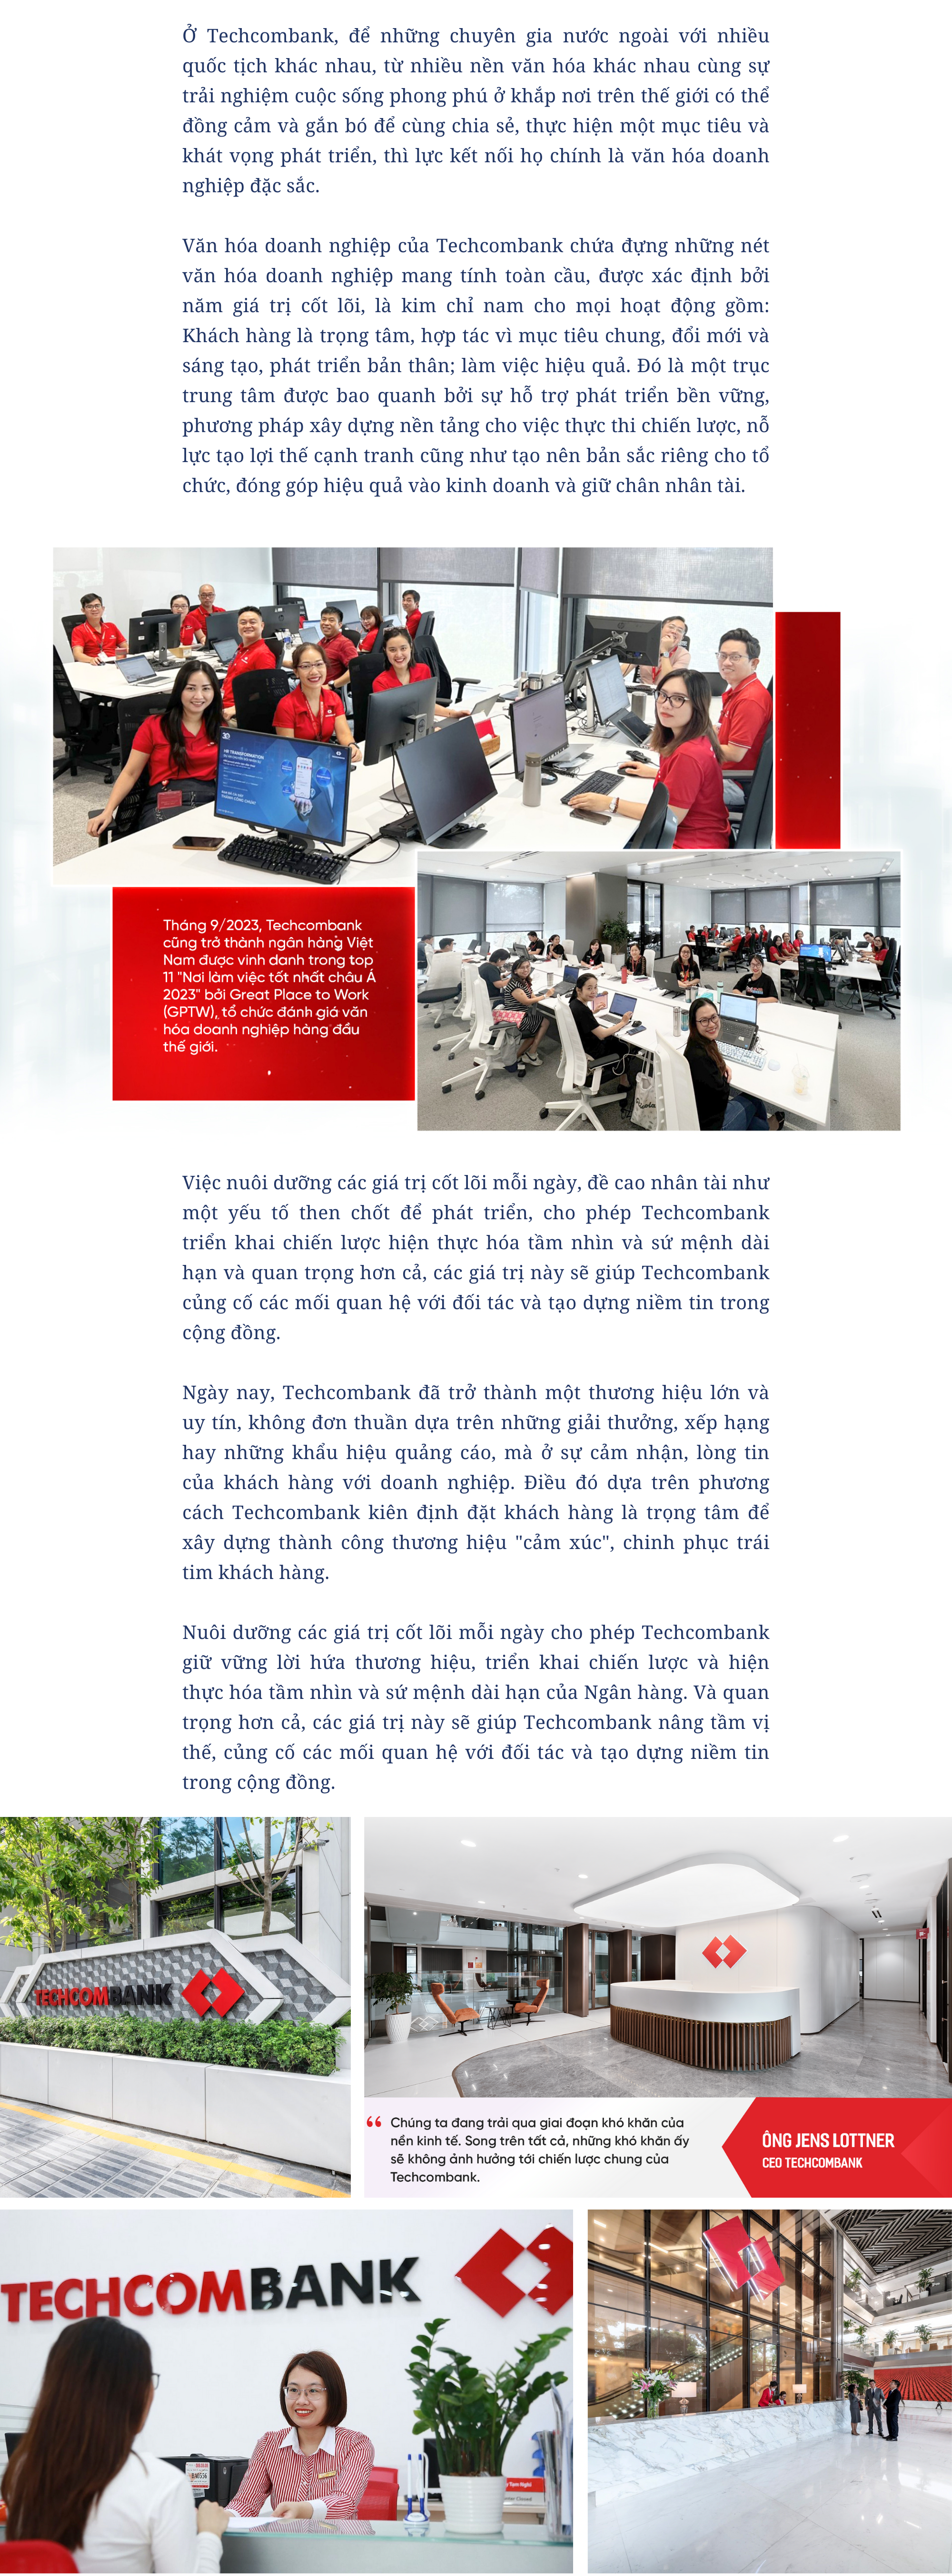 [P magazine] Techcombank vượt 3 tỷ USD lợi nhuận trong 3 năm gần nhất